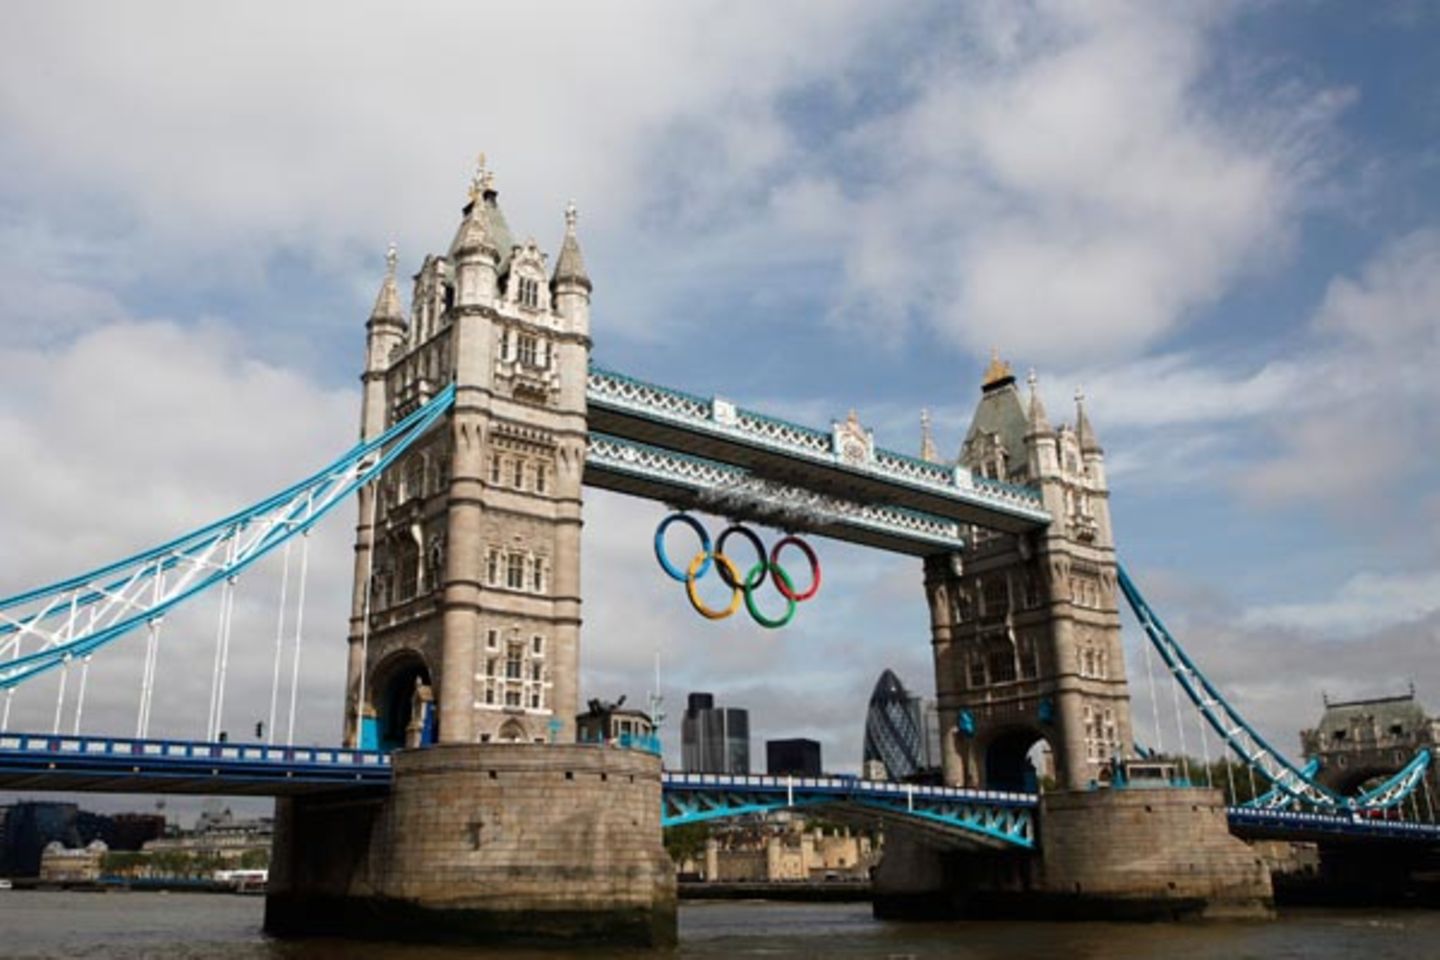 London versprüht olympisches Flair: Gut sichtbar hängen die fünf olympischen Ringe an der weltberühmten Tower Bridge.